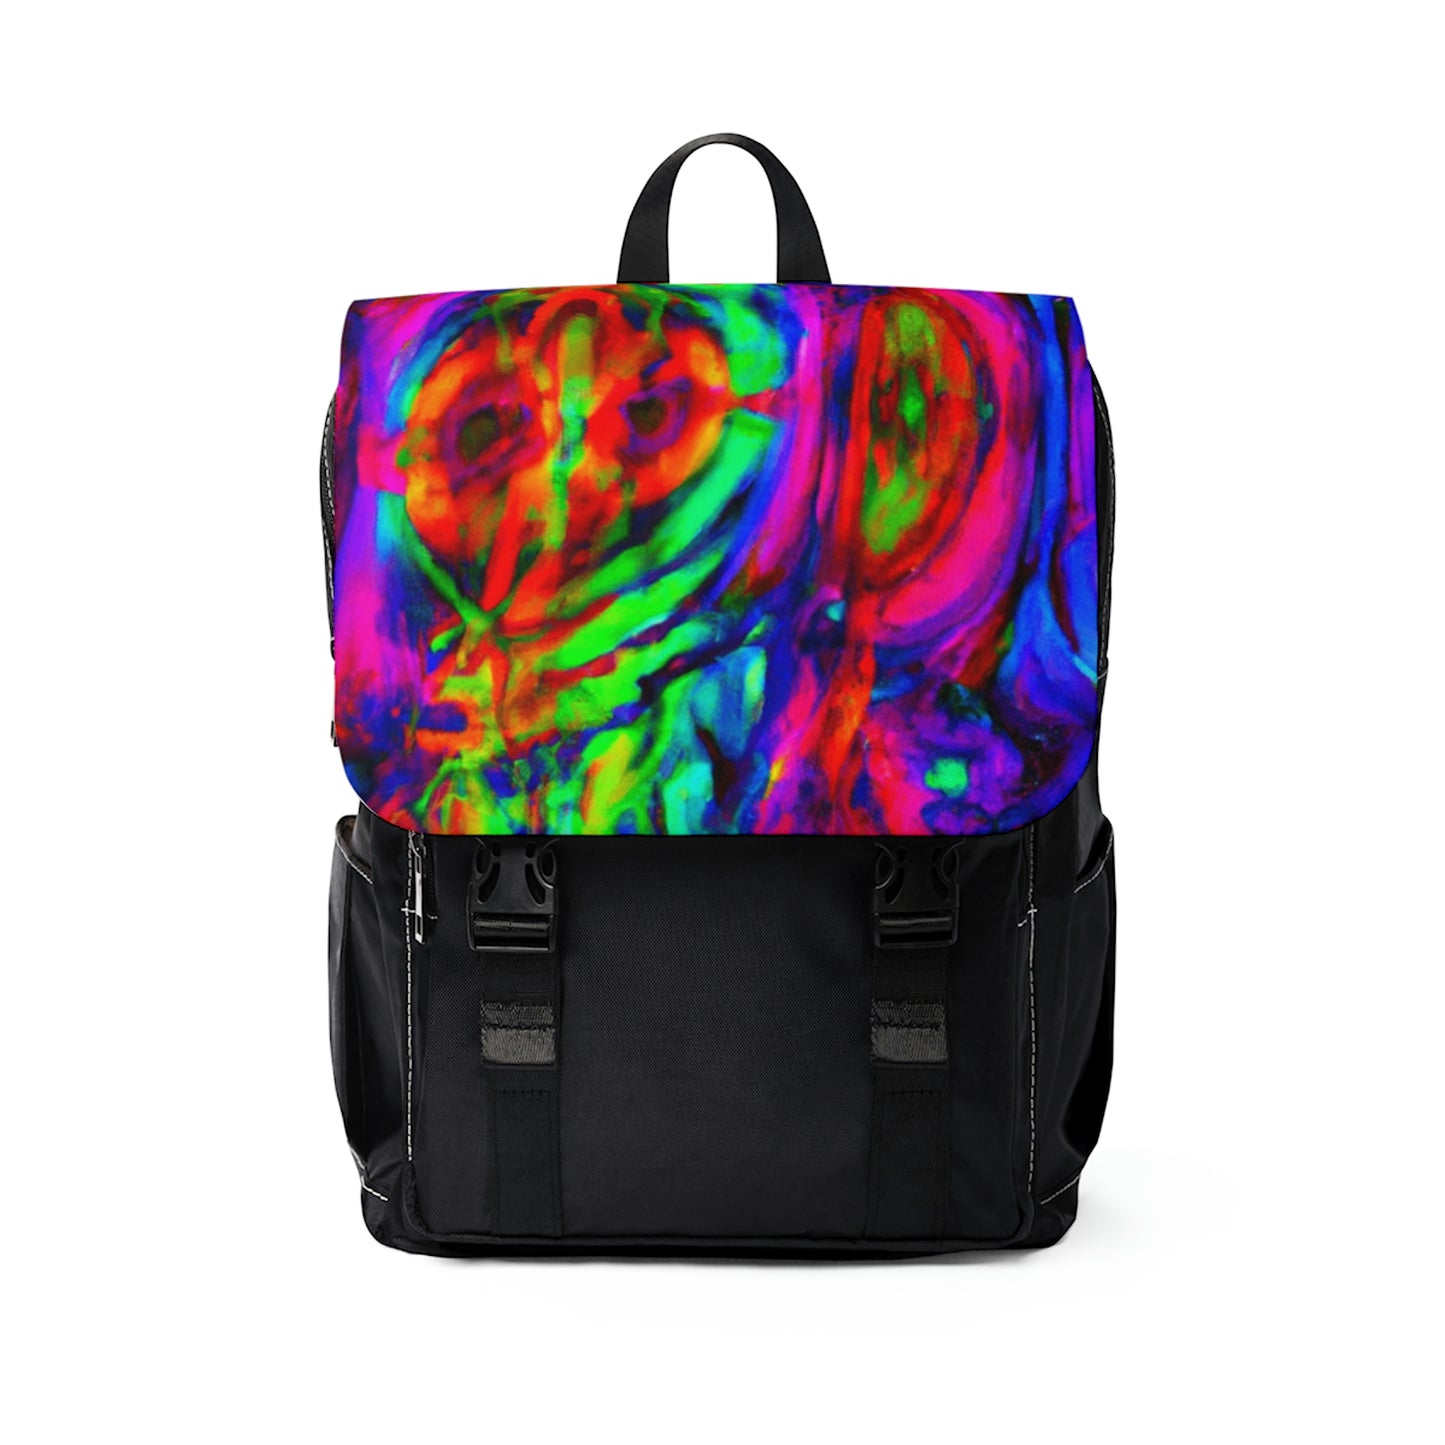 Capucine - Psychedelic Shoulder Travel Backpack Bag